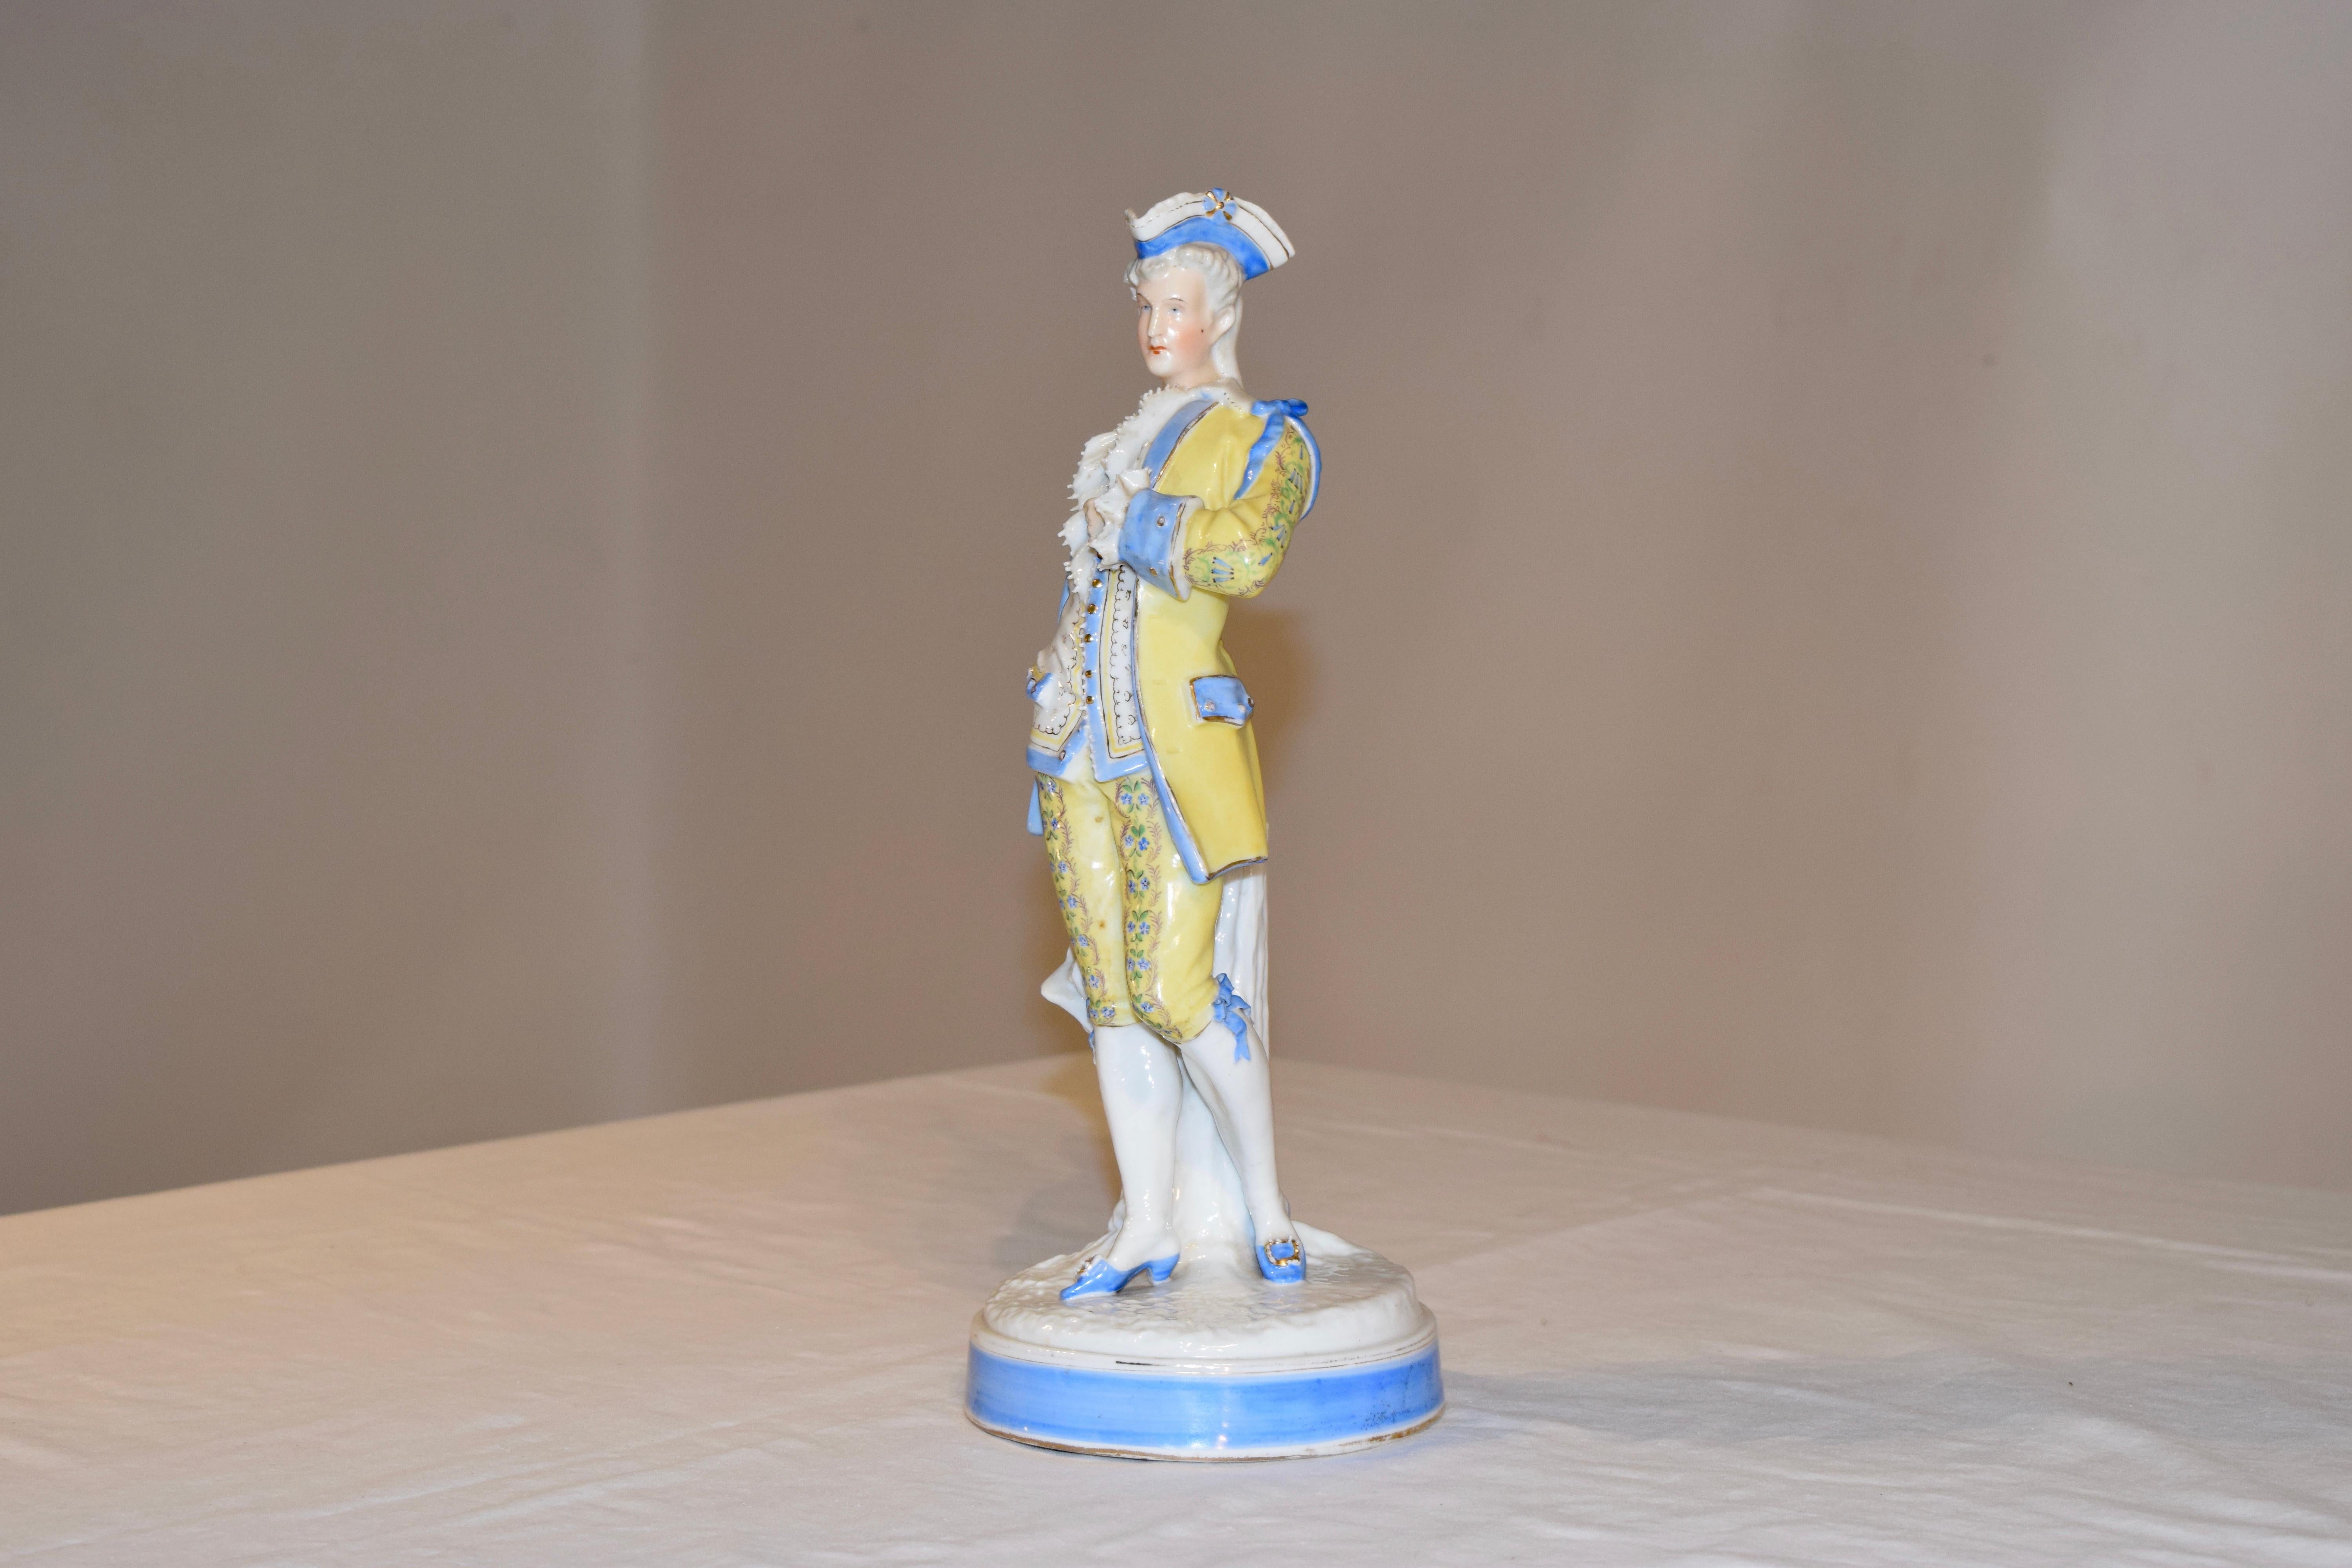 Figurine de Sitzendorf du XIXe siècle représentant un gentilhomme vêtu d'une parure peinte à la main. Il est coiffé d'un tricorne bleu et porte un costume jaune, bordé d'un joli bleu et décoré à la main de fleurs et de boutons dorés. Ses chaussures